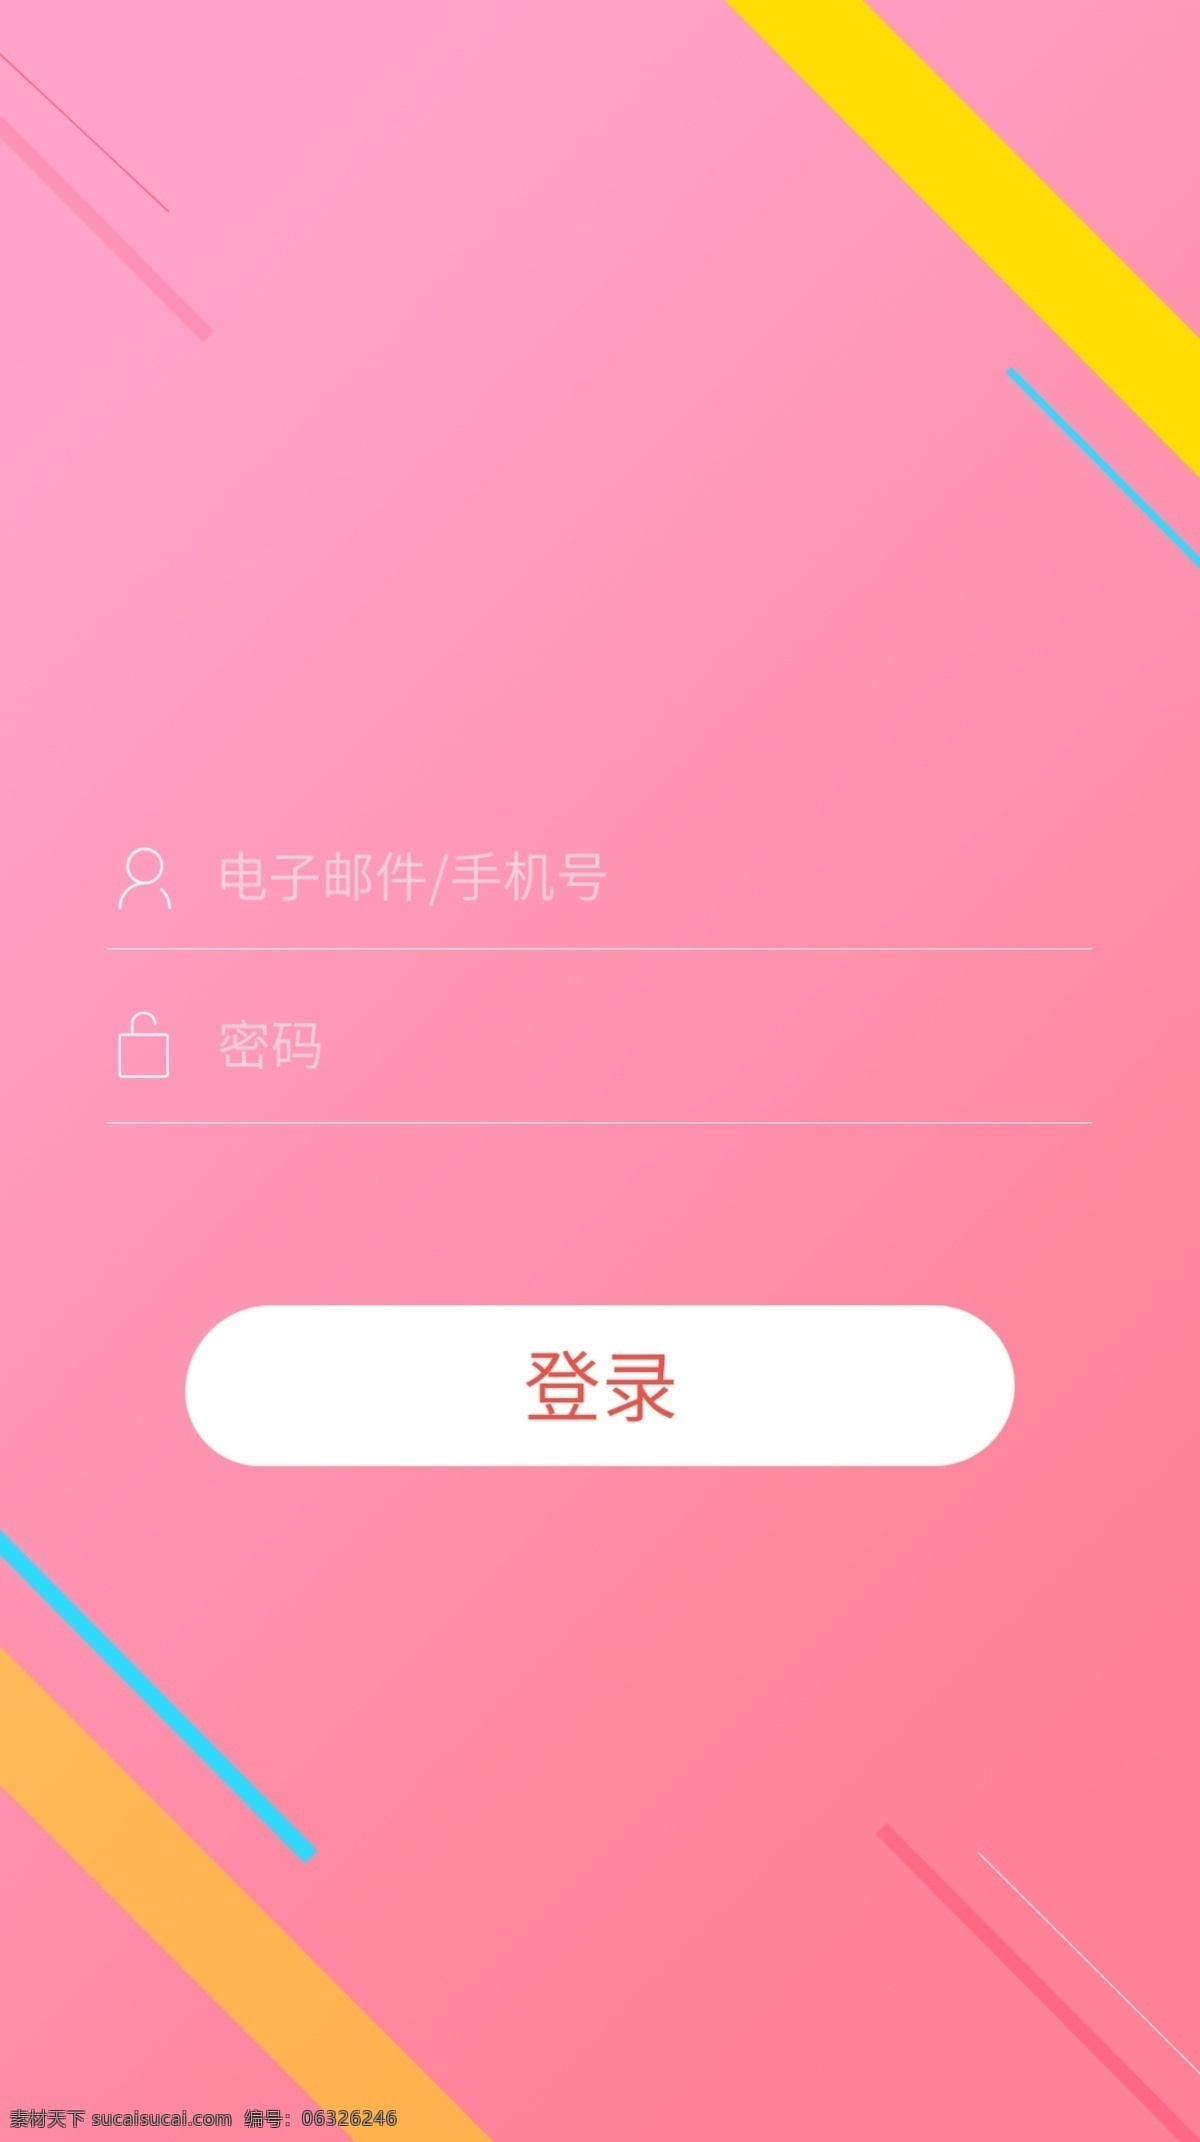 音乐 类 app 登录 注册 登录注册 小清新 粉色 线条 简洁